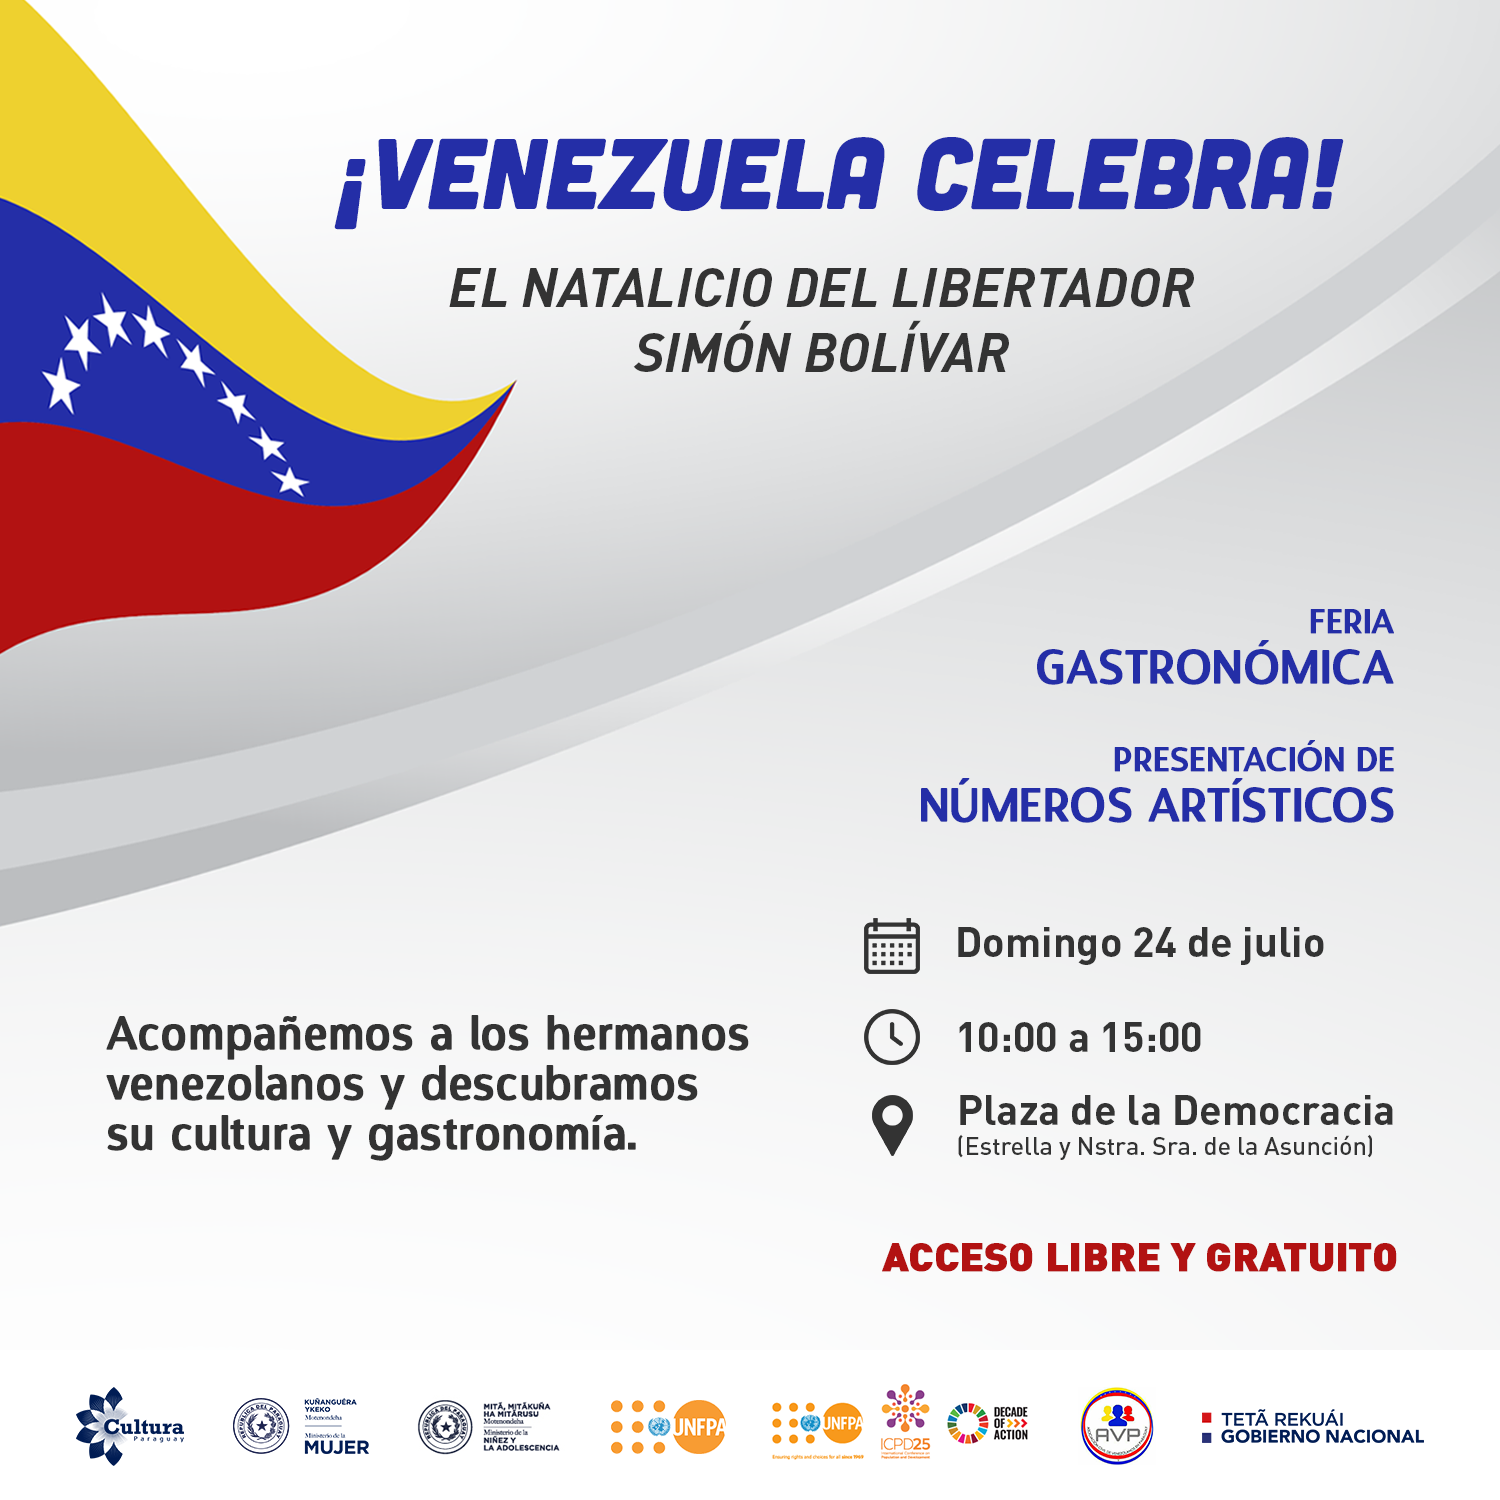 Migrantes venezolanos en nuestro país celebrarán el Natalicio de Simón Bolívar imagen